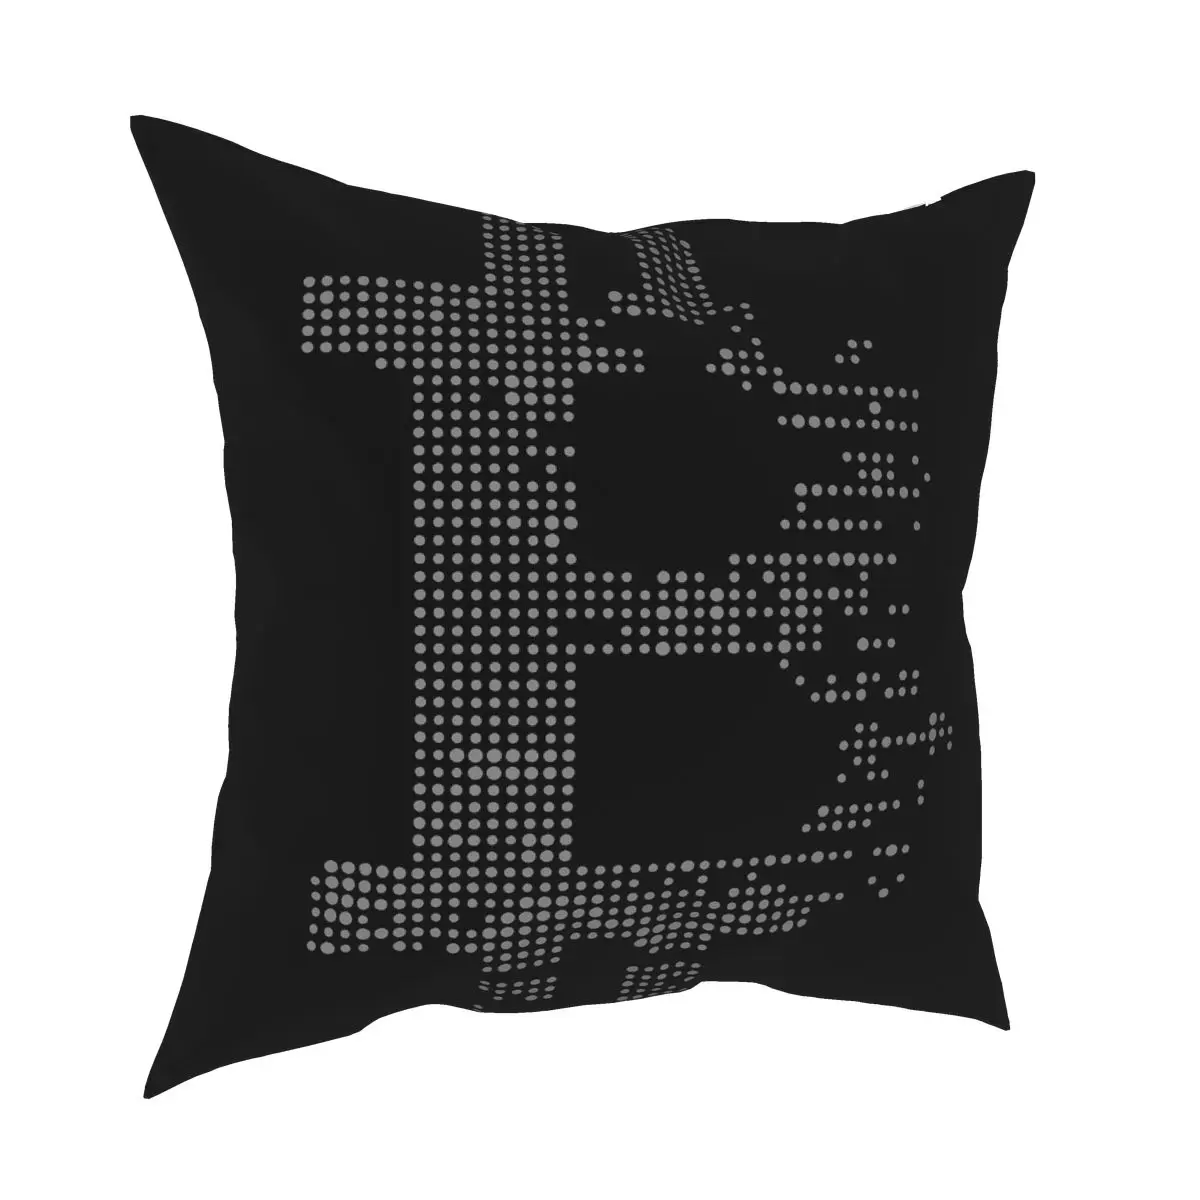 

Наволочка с логотипом криптовалюты Bitcoin, декоративная наволочка Hodl BTC, декоративная подушка для автомобиля, полиэстер, двусторонняя печать